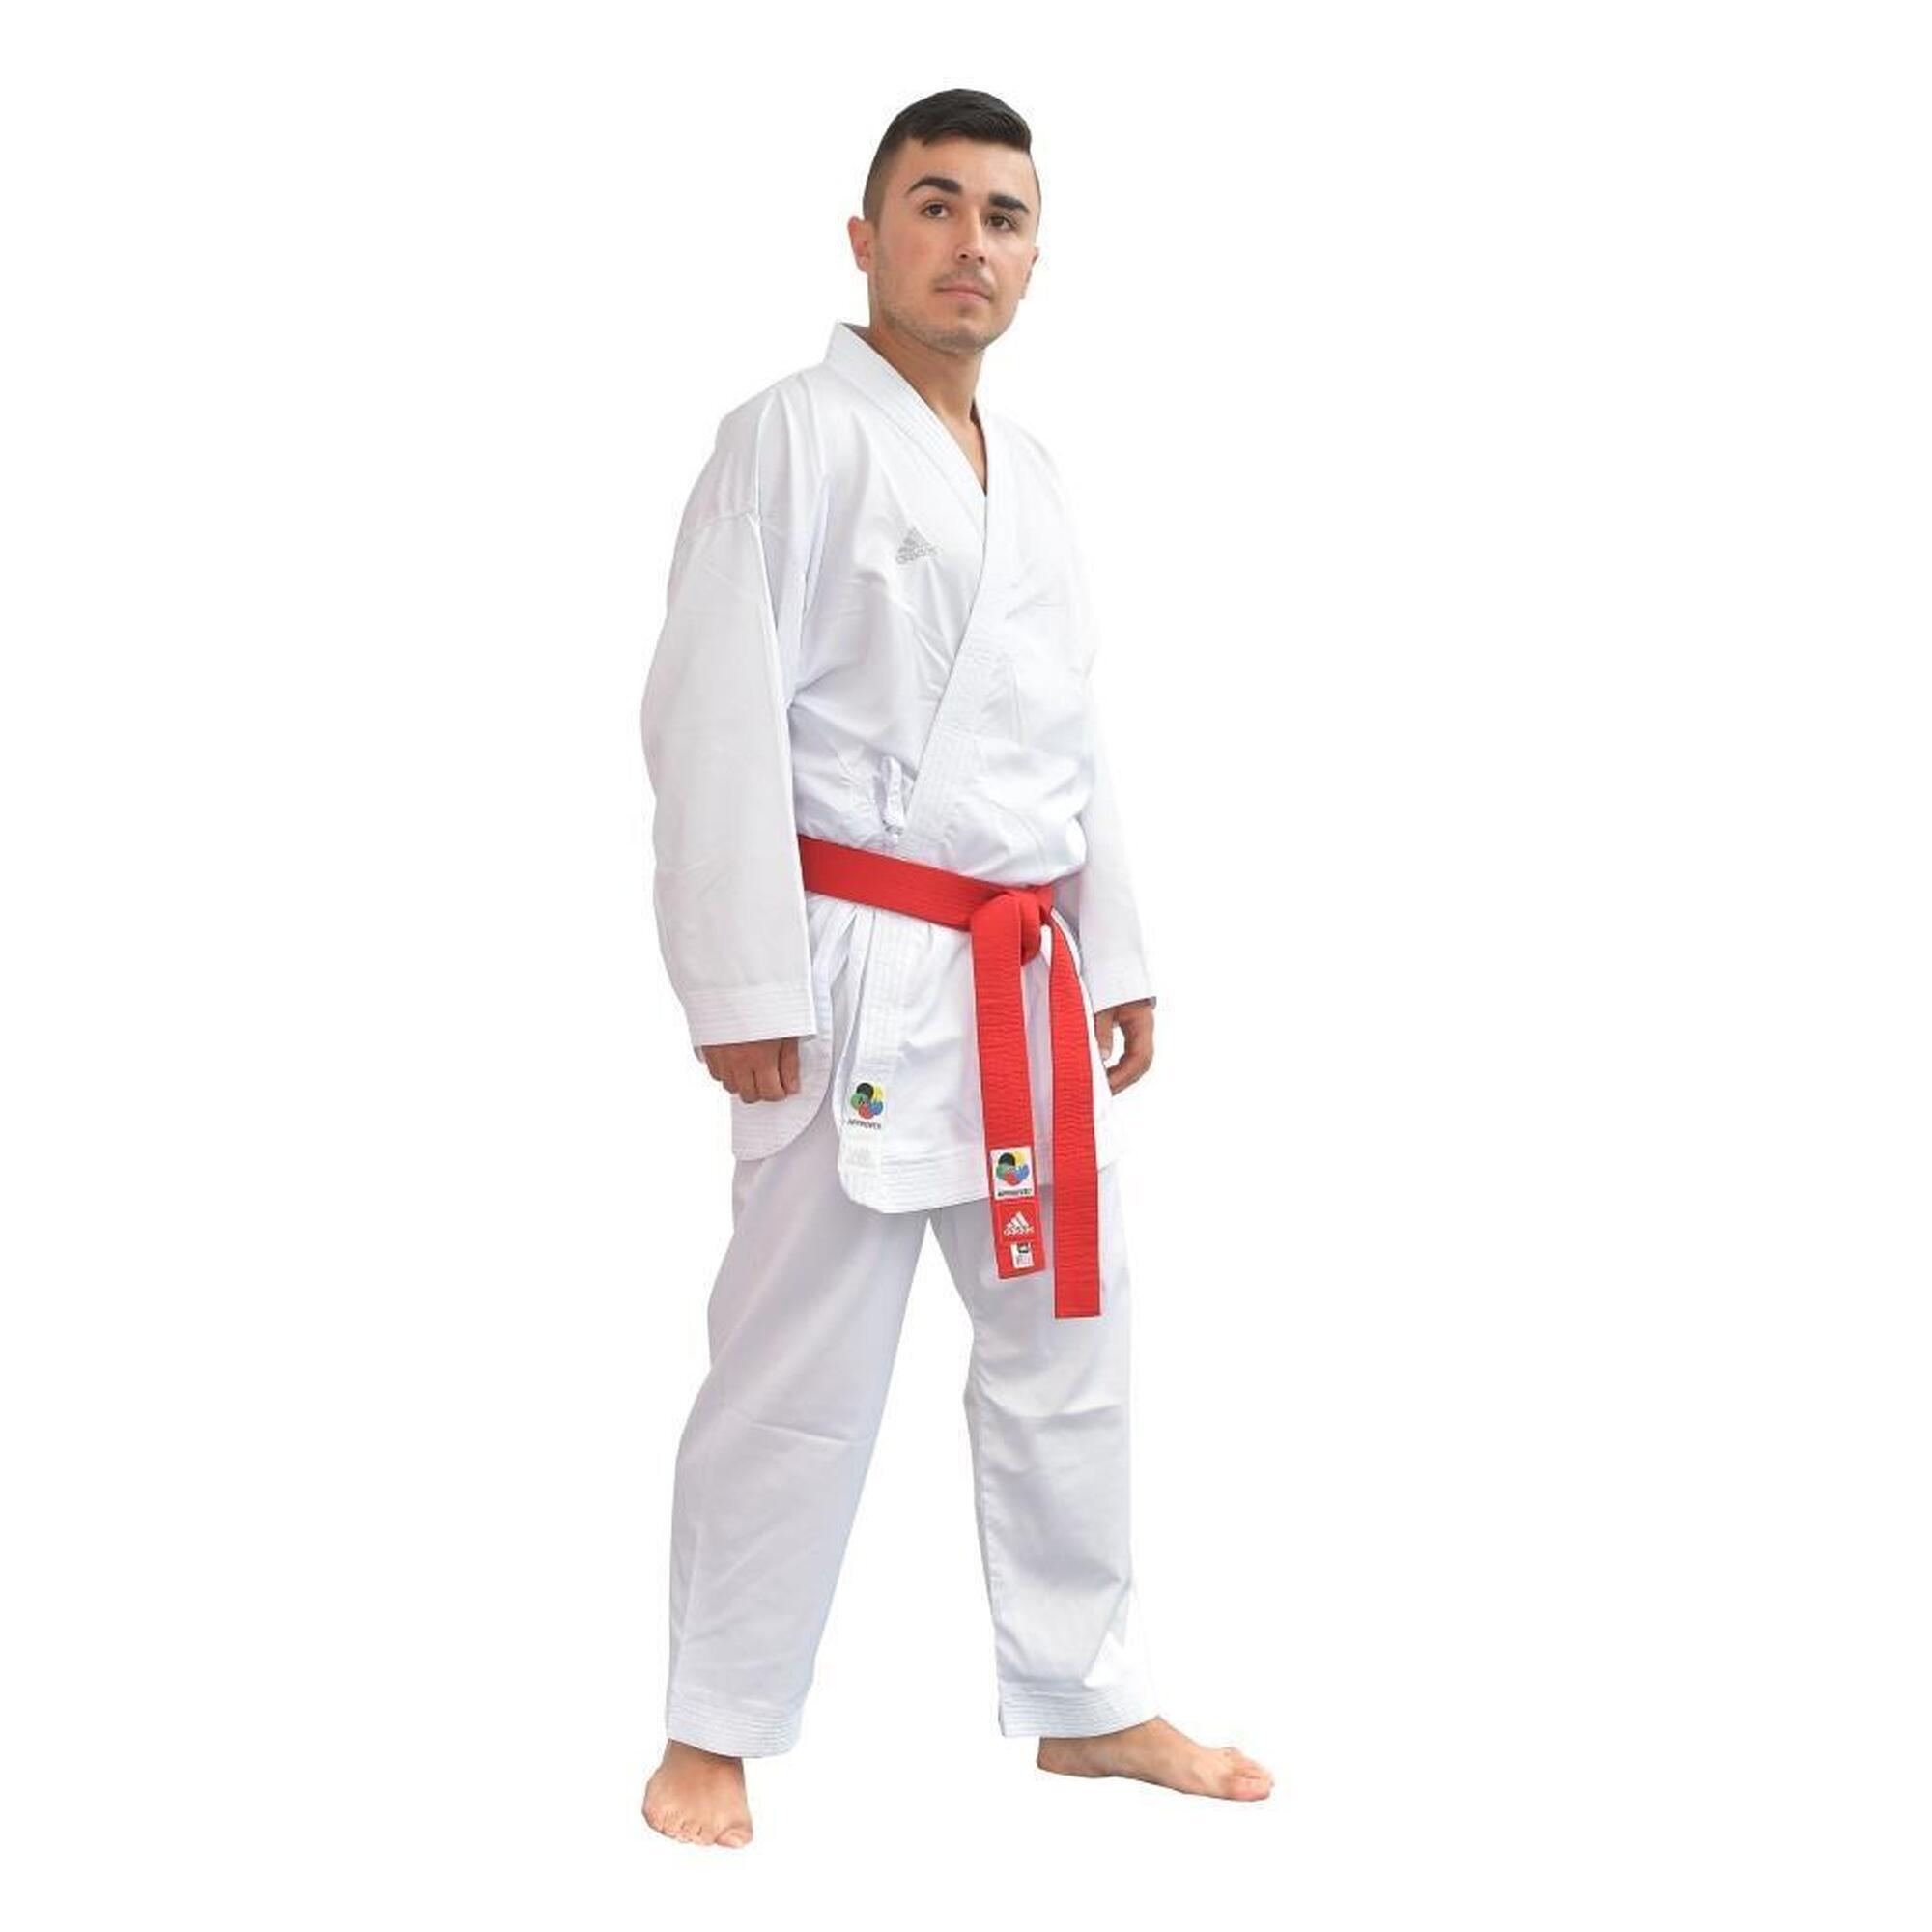 Karatepak ADIZERO - kumite